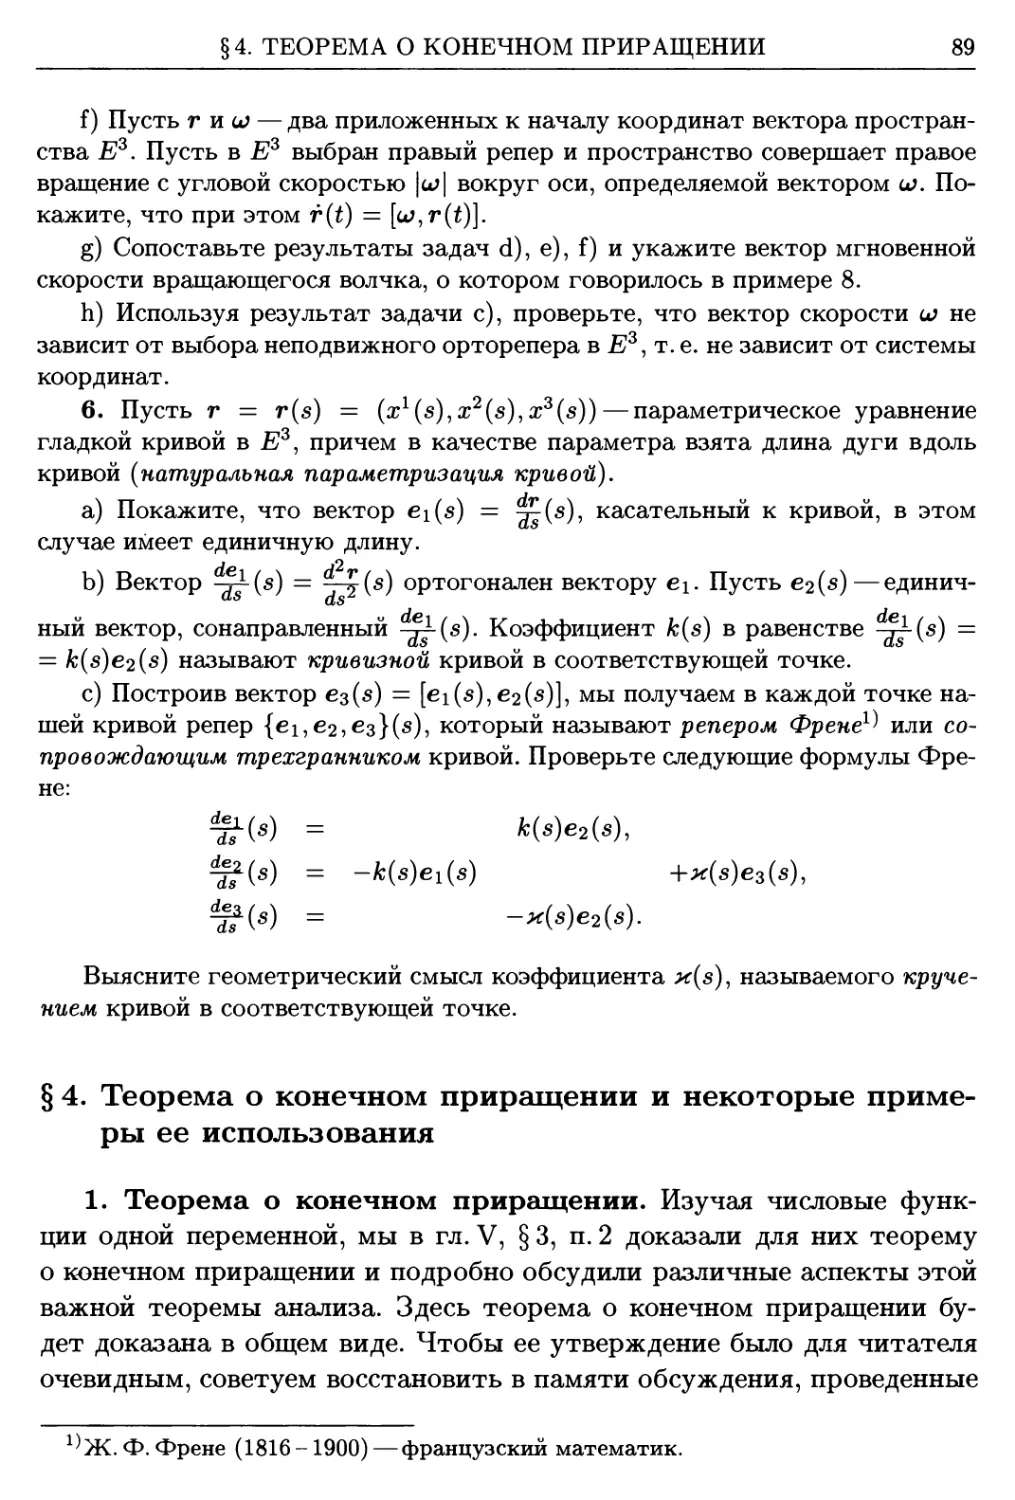 §4. Теорема о конечном приращении и некоторые примеры ее использования